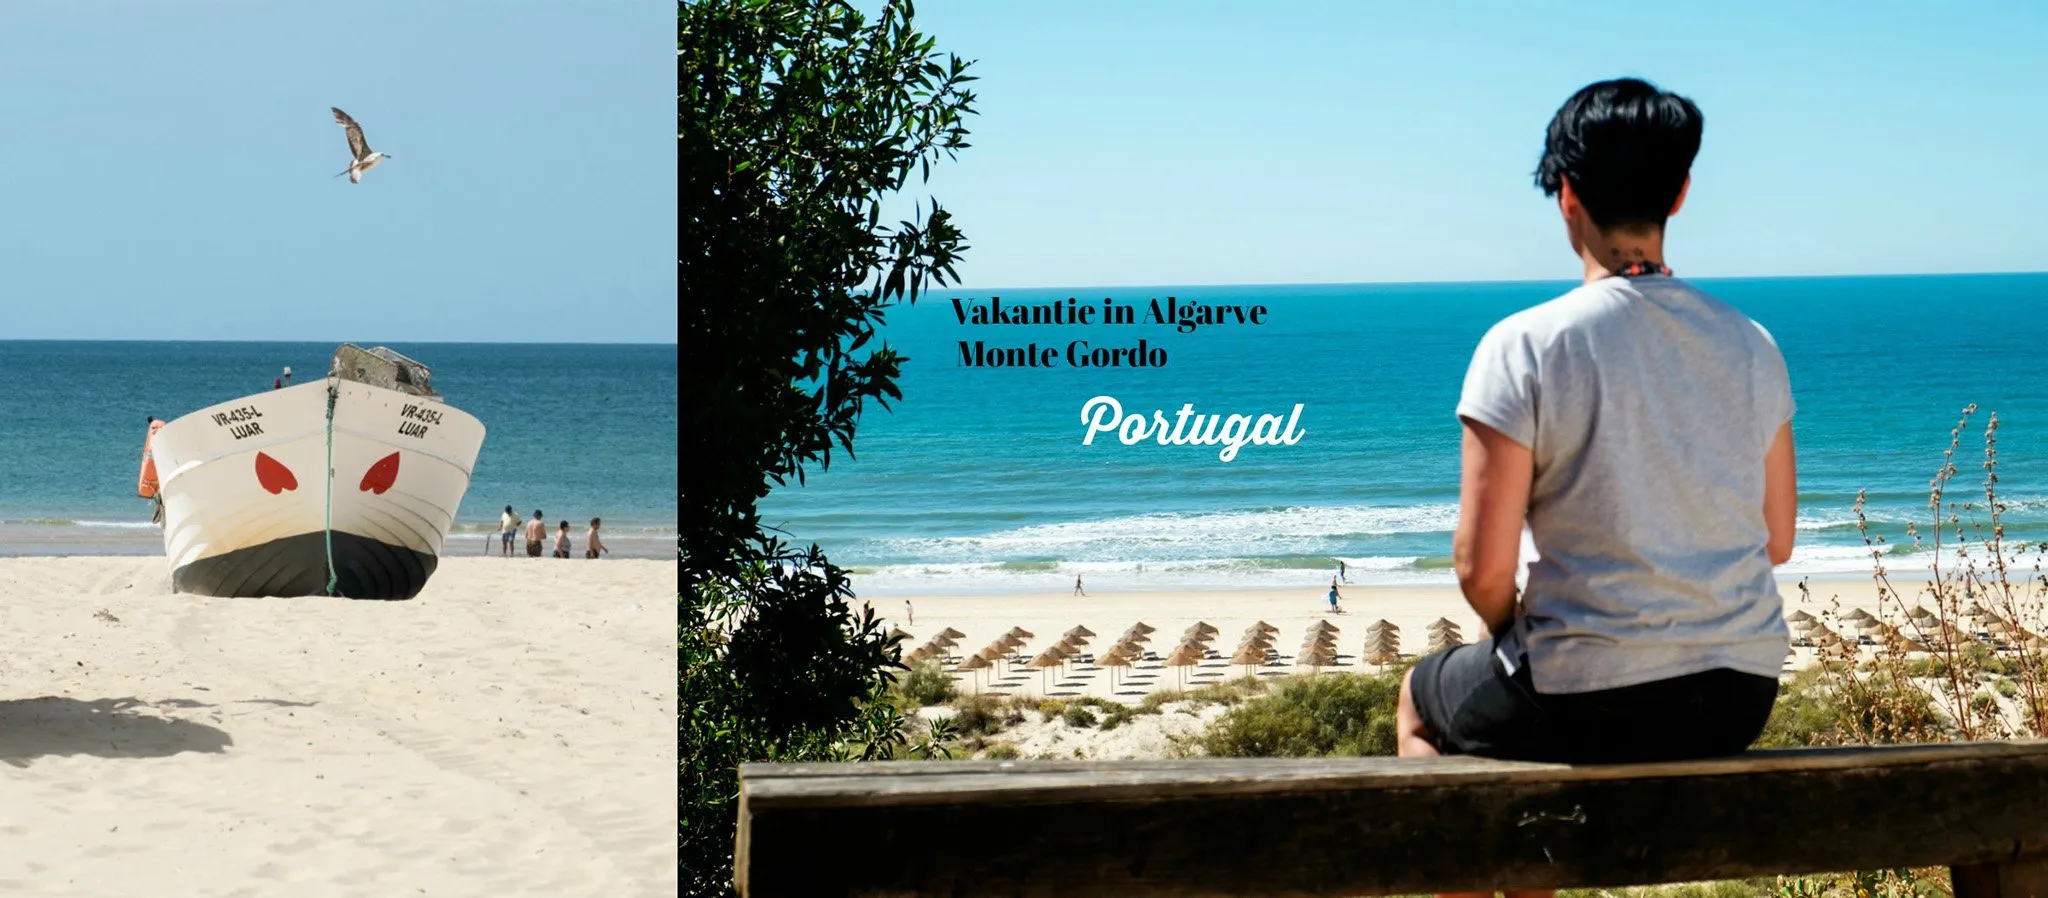 Vakantie in Algarve Monte Gordo Portugal - Persoonlijk